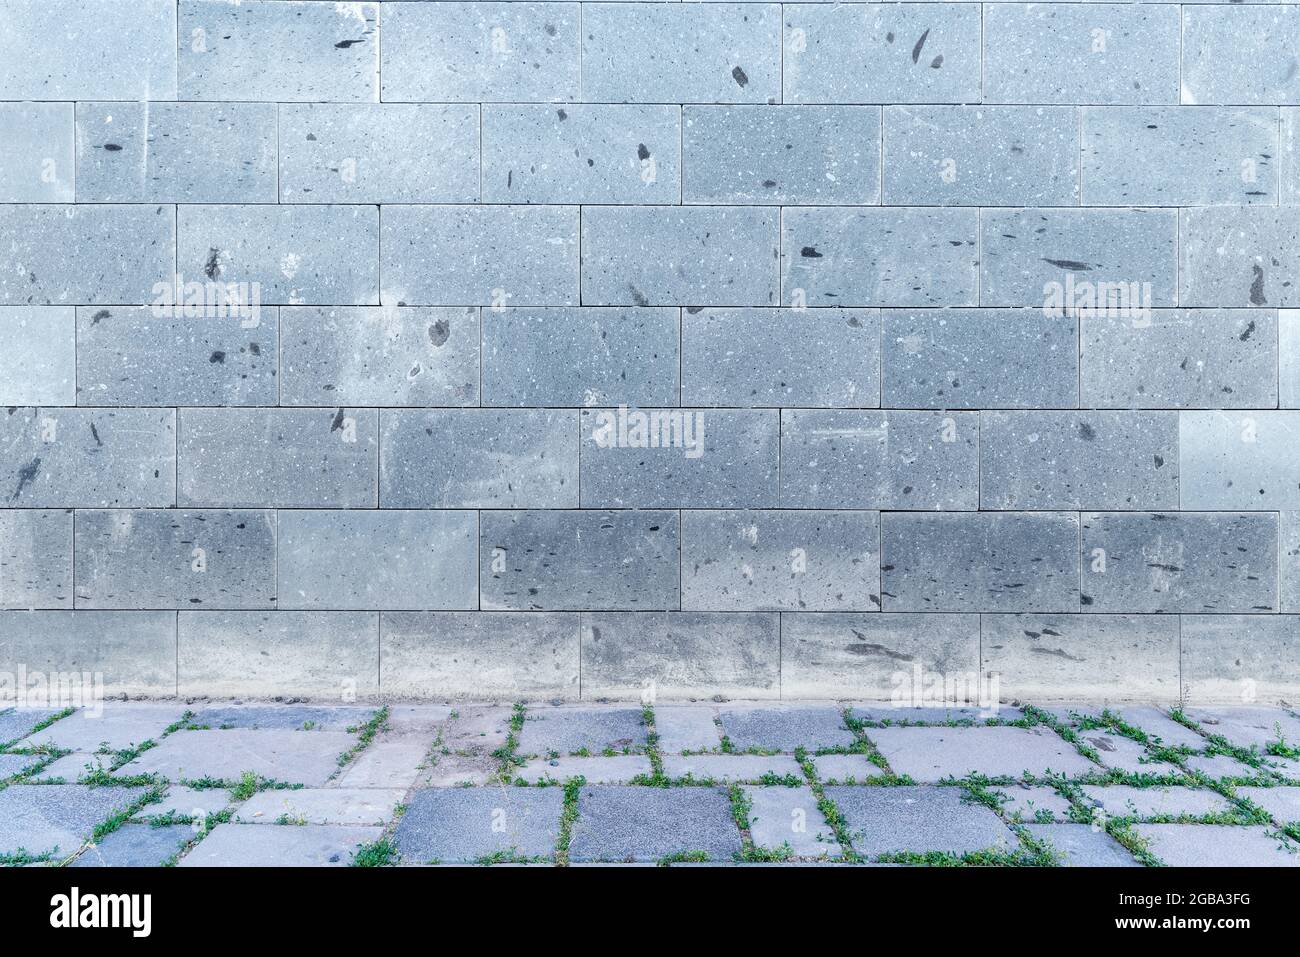 La parete con grigio chiaro, mattoni bianchi e decorazione di marciapiede di ciottoli per sfondo. Foto di alta qualità Foto Stock